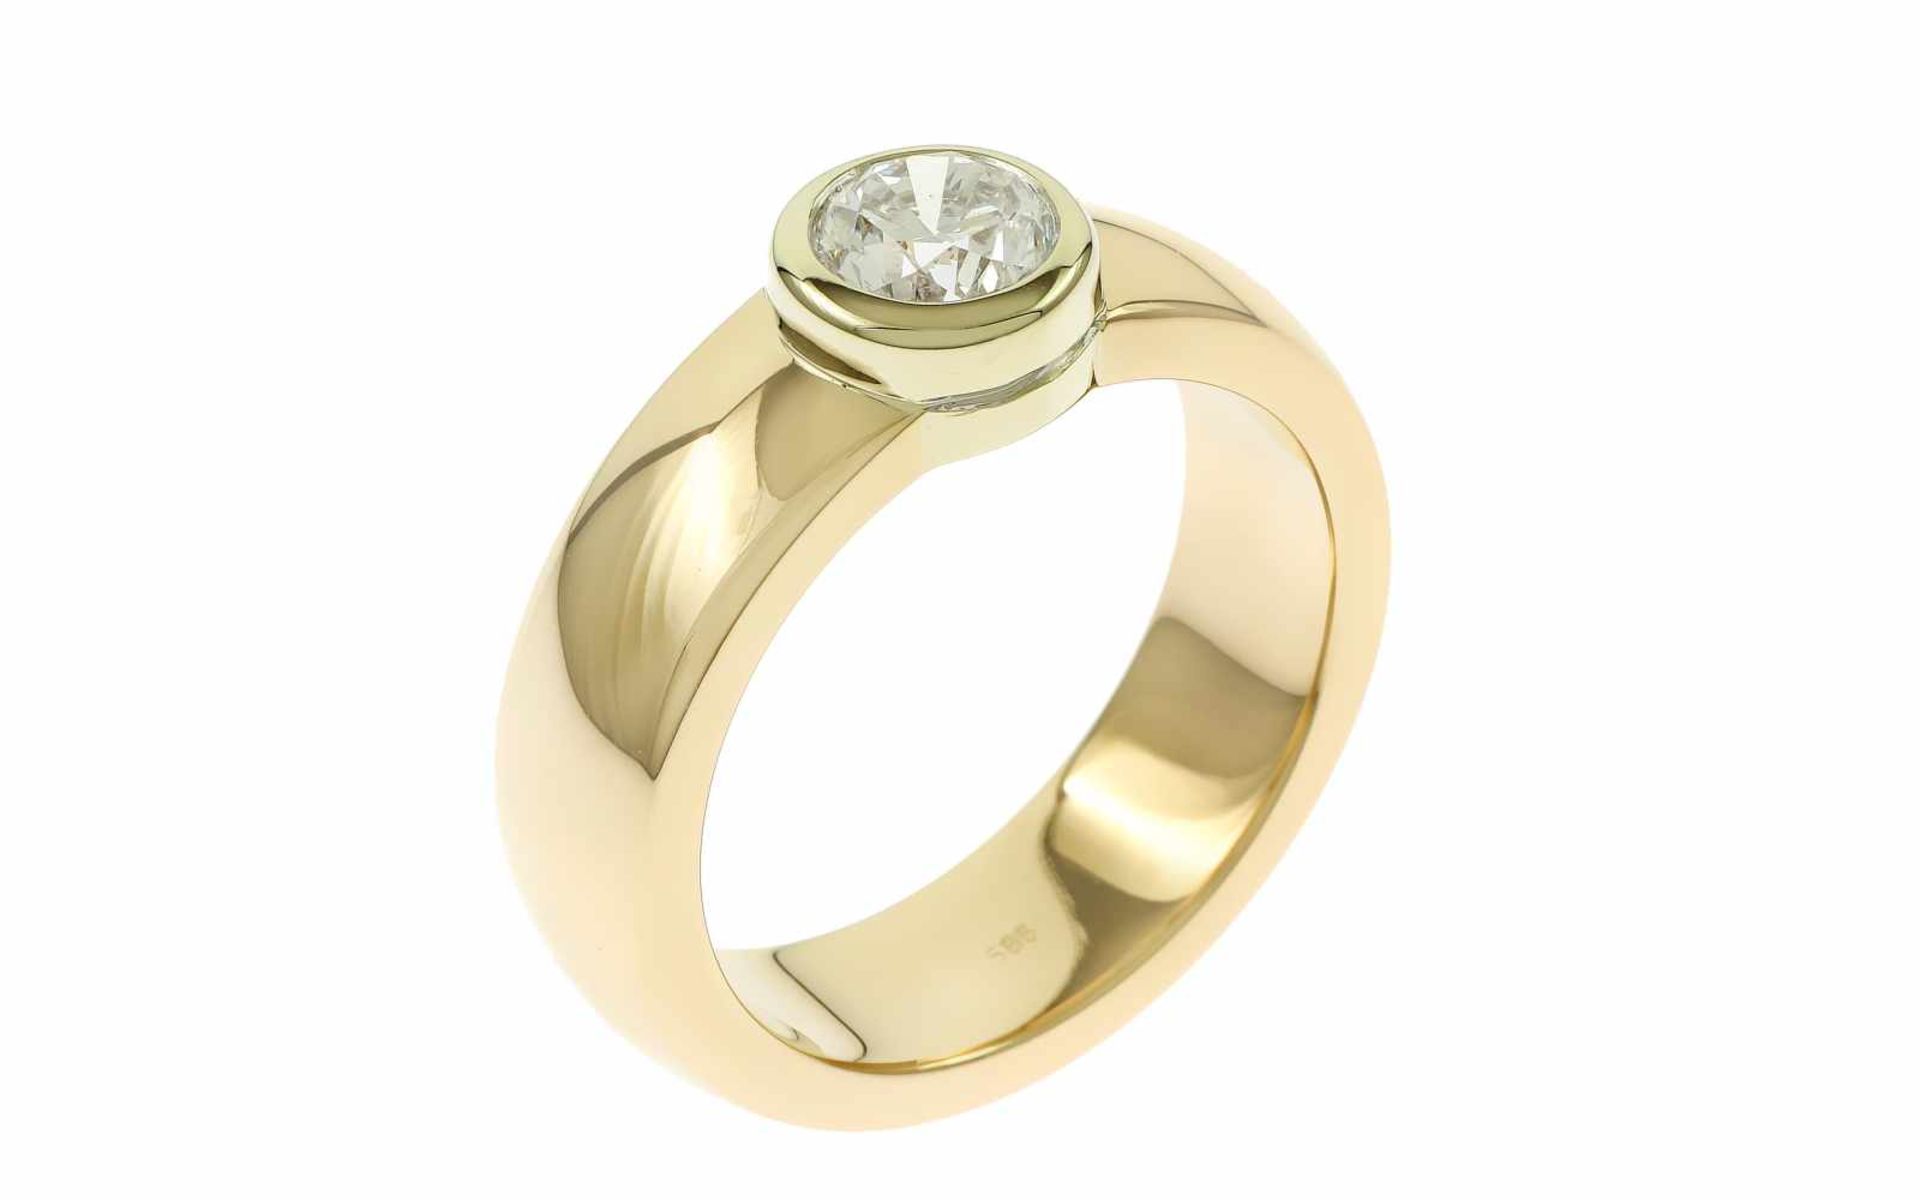 Ring mit Diamant14K GG mit 1,00 ct. Diamant D/if Brillantschliff, Ringgröße 62, Breite Ringkopf 8,40